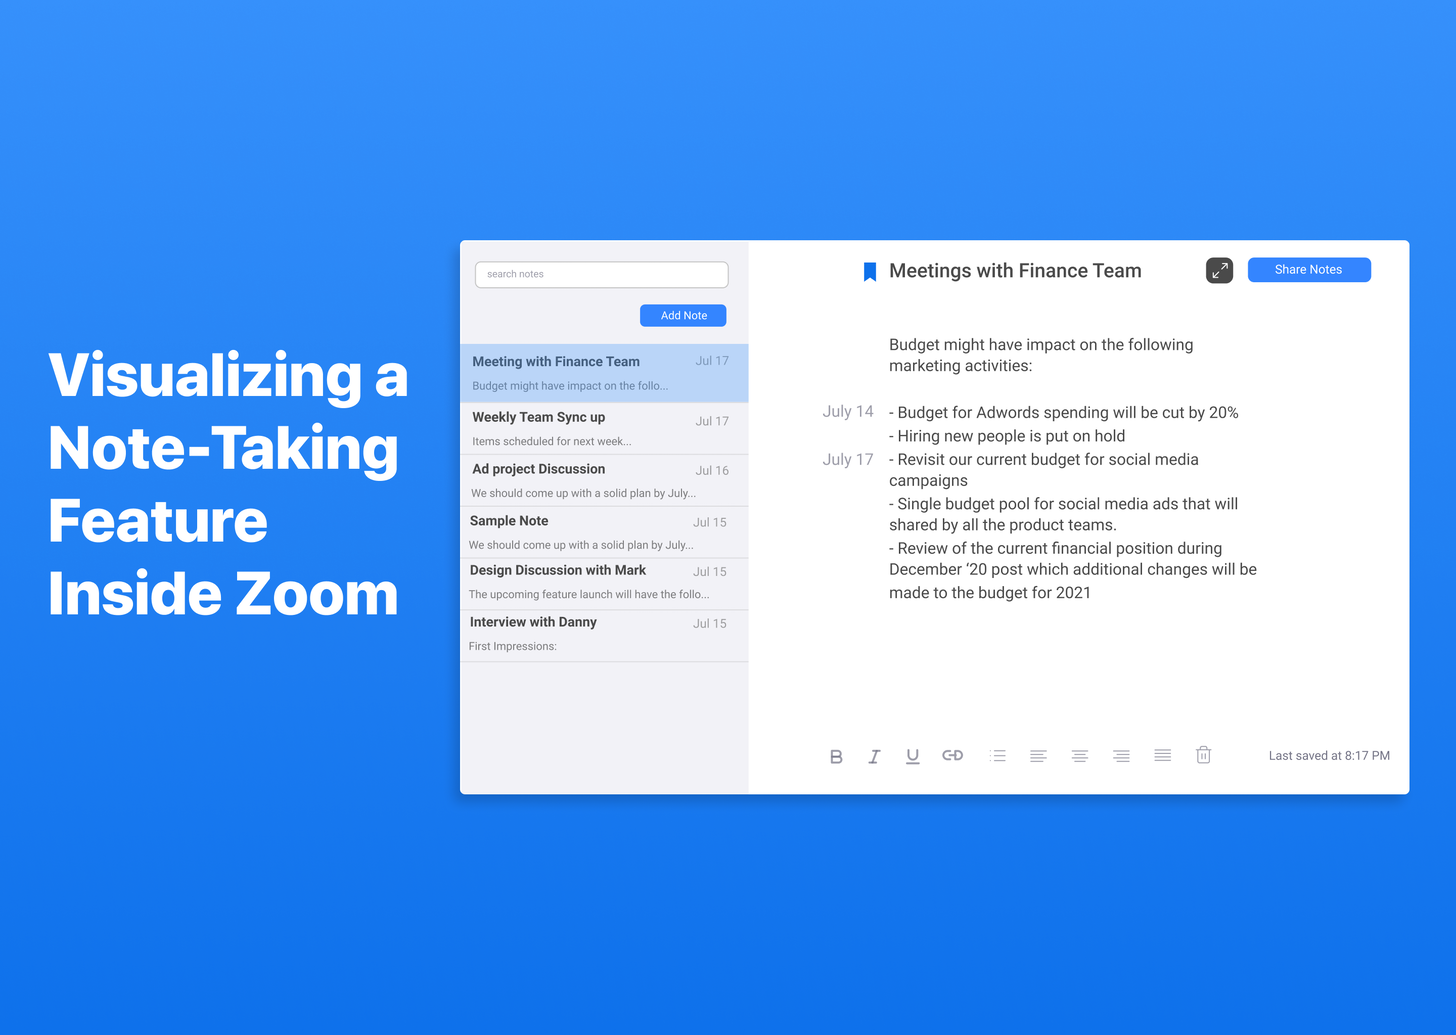 Note-taking app inside Zoom